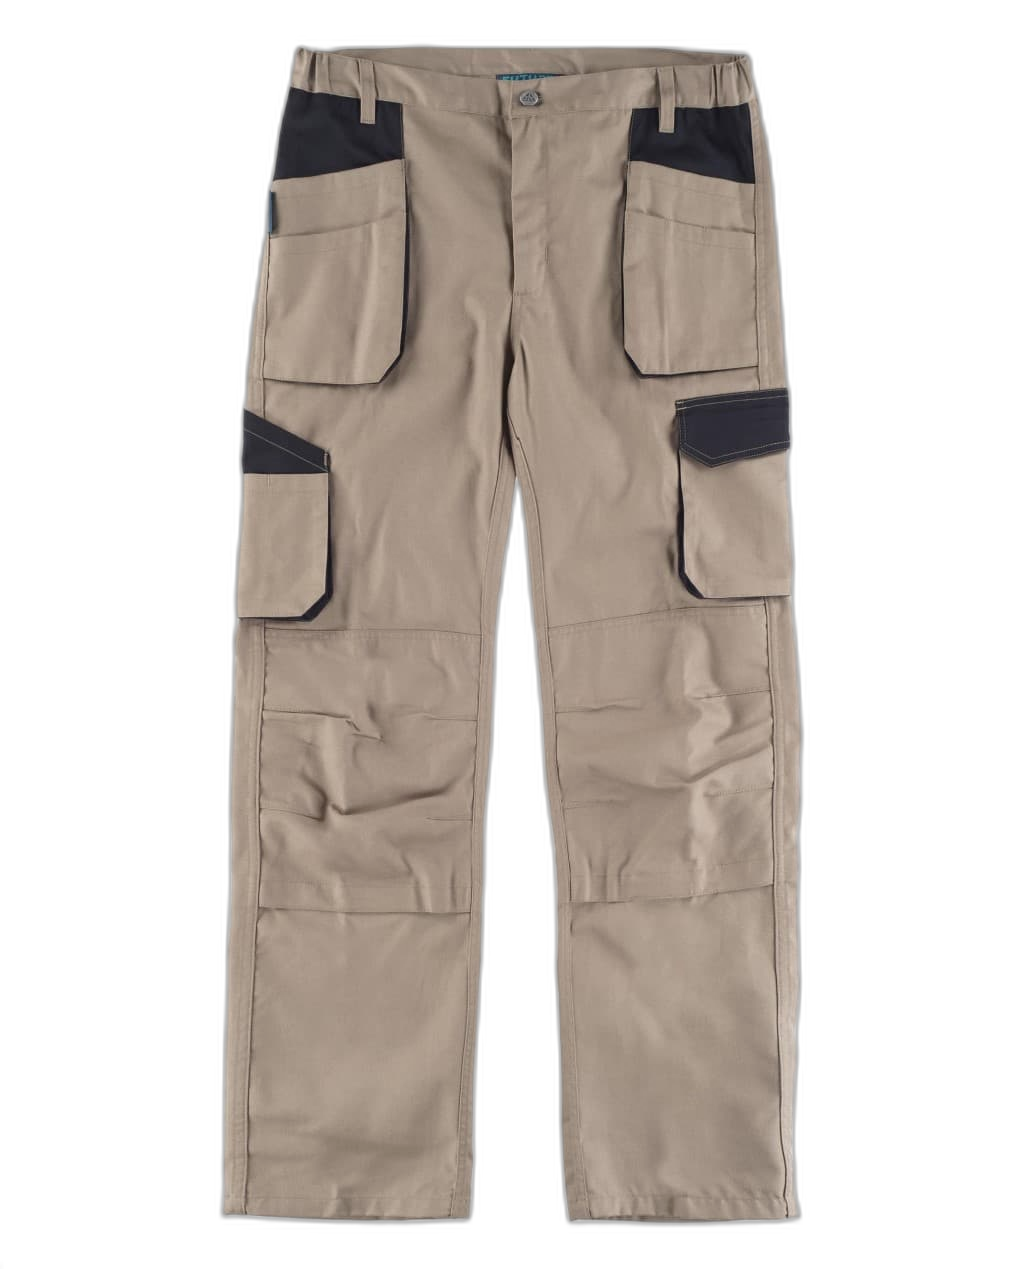 Pantalón combinado de tejido elástico WORKTEAM WF2650